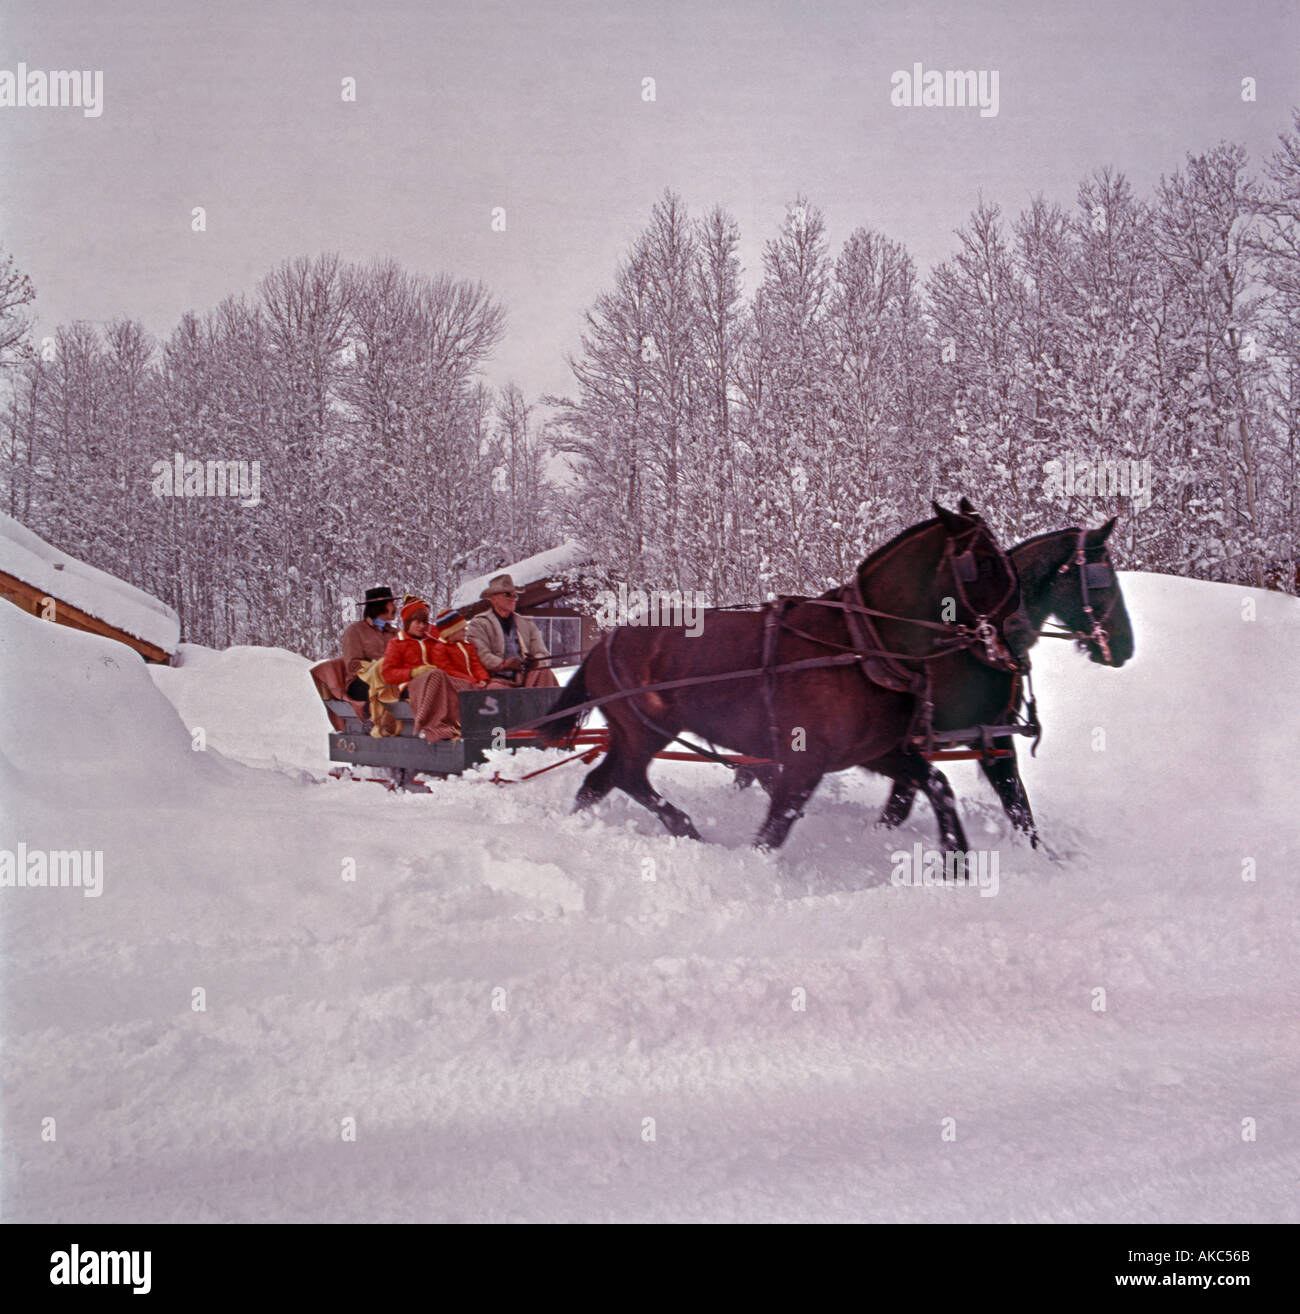 In slitta a cavallo in una scena invernale una gita di famiglia nella neve Foto Stock